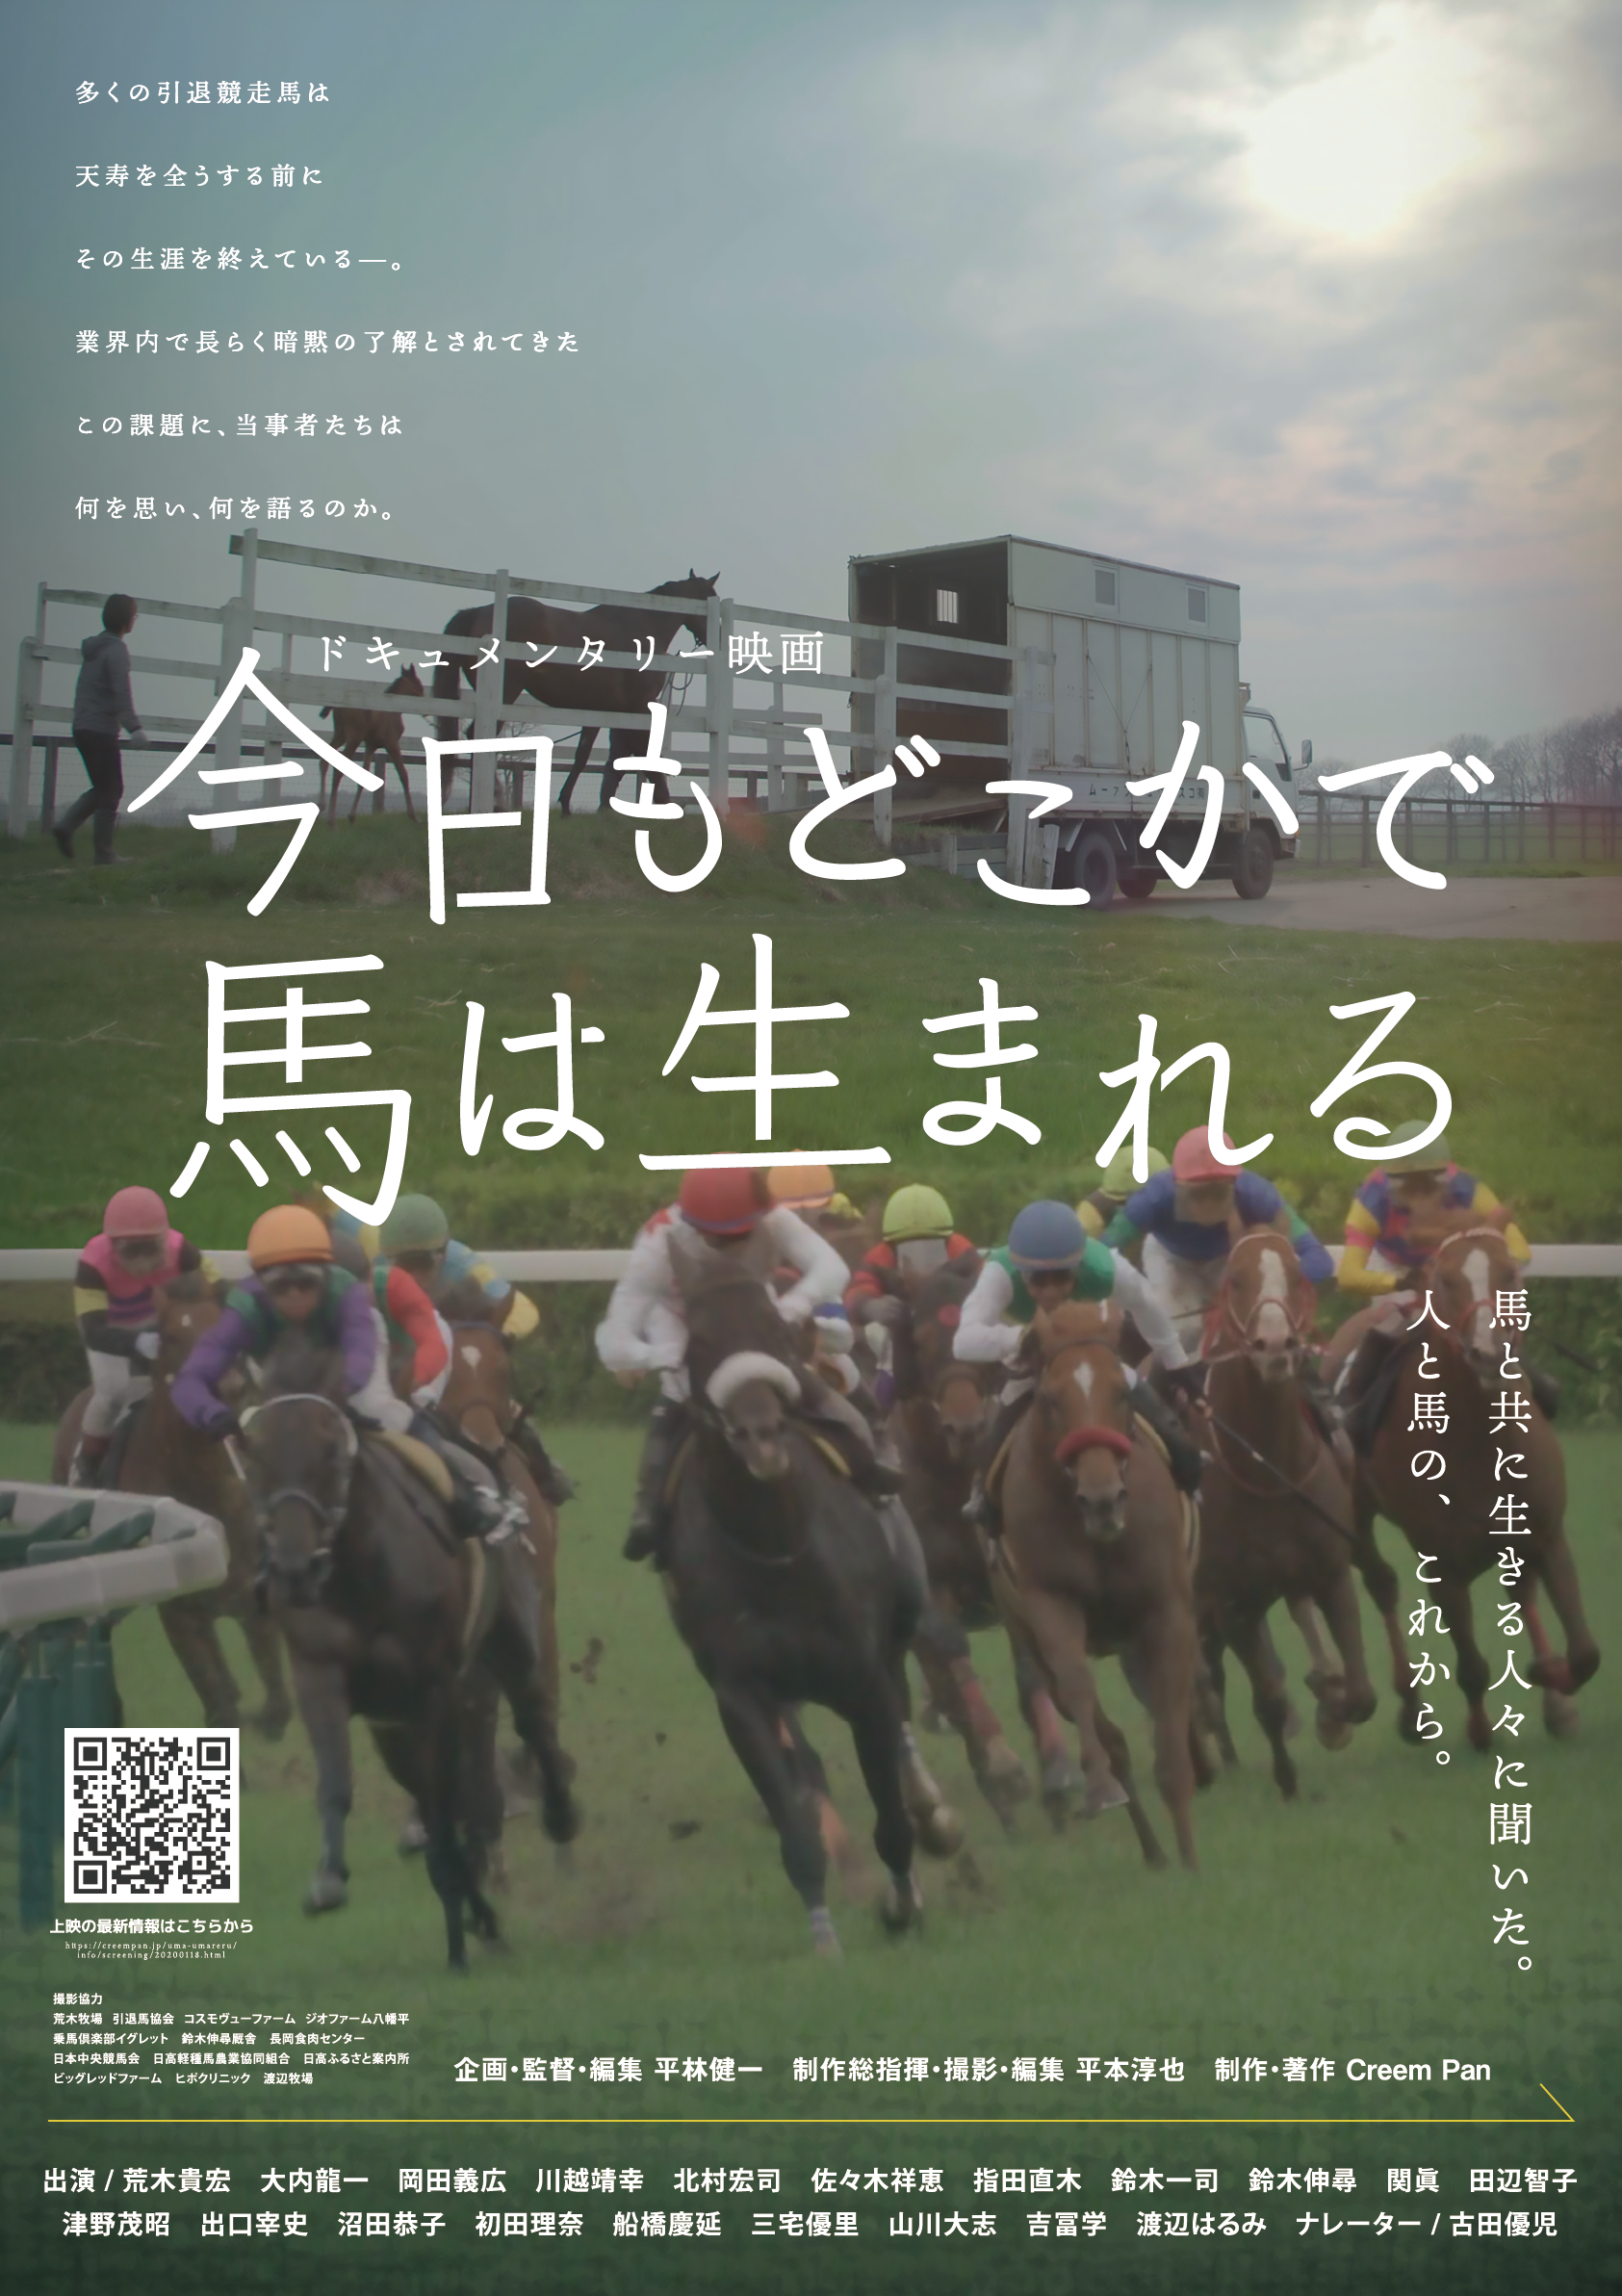 【TCC CAFE】映画「今日もどこかで馬は生まれる」年内最後の上映会 開催決定!